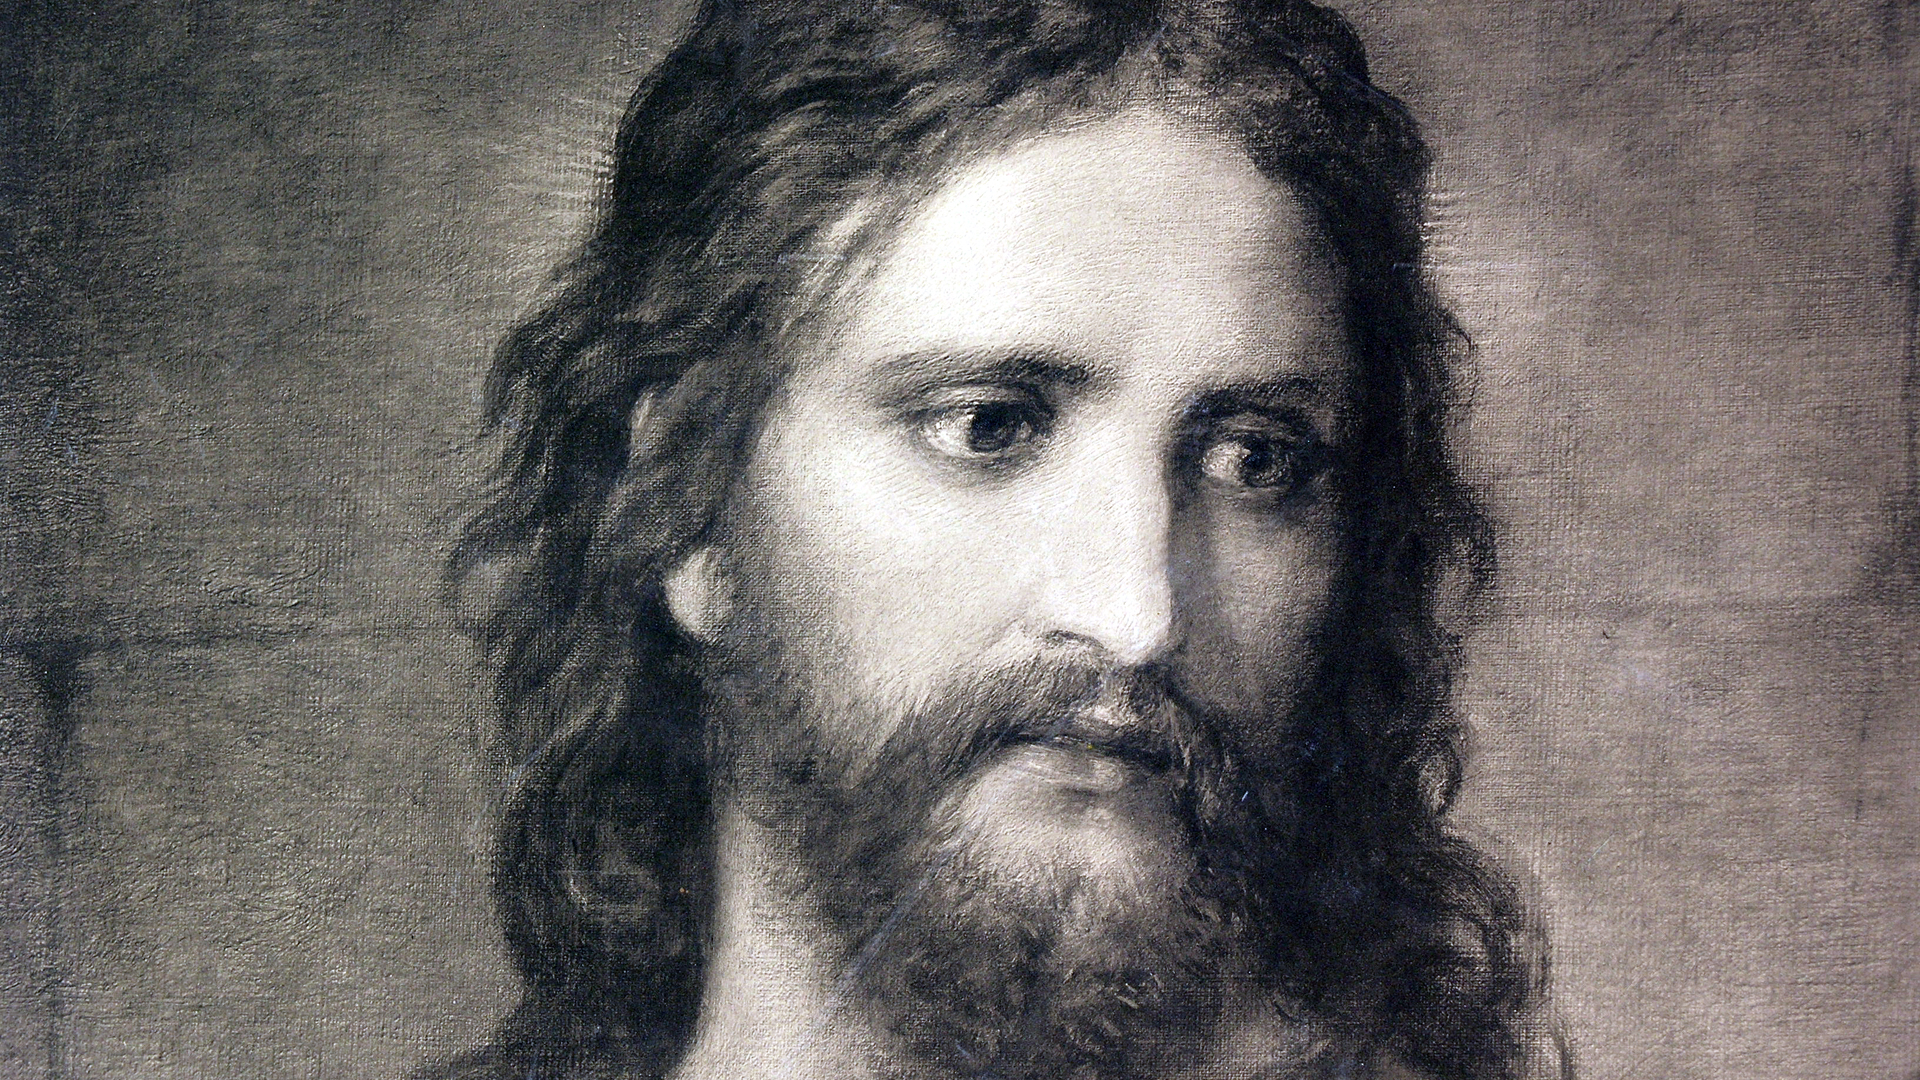 Jesus von Nazareth 1